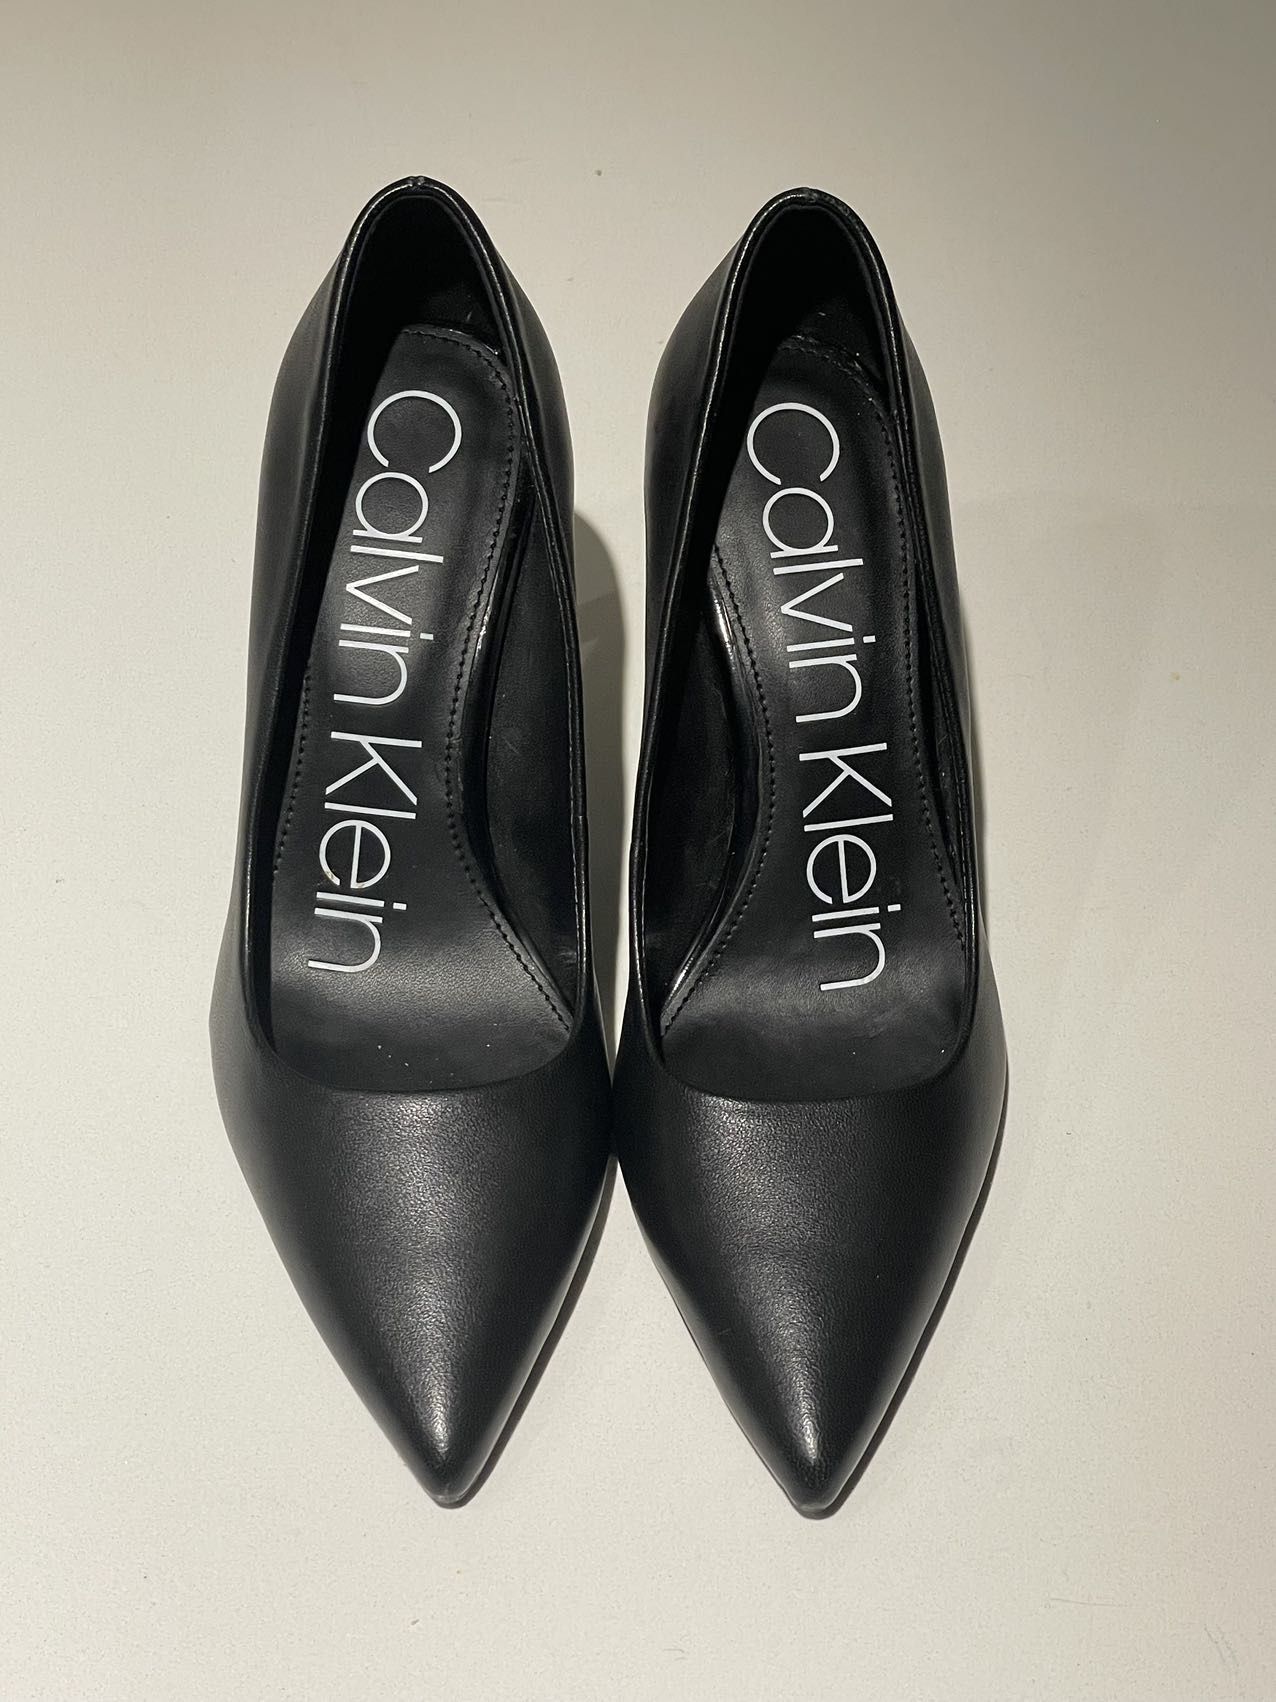 Calvin Klein Donna high heels